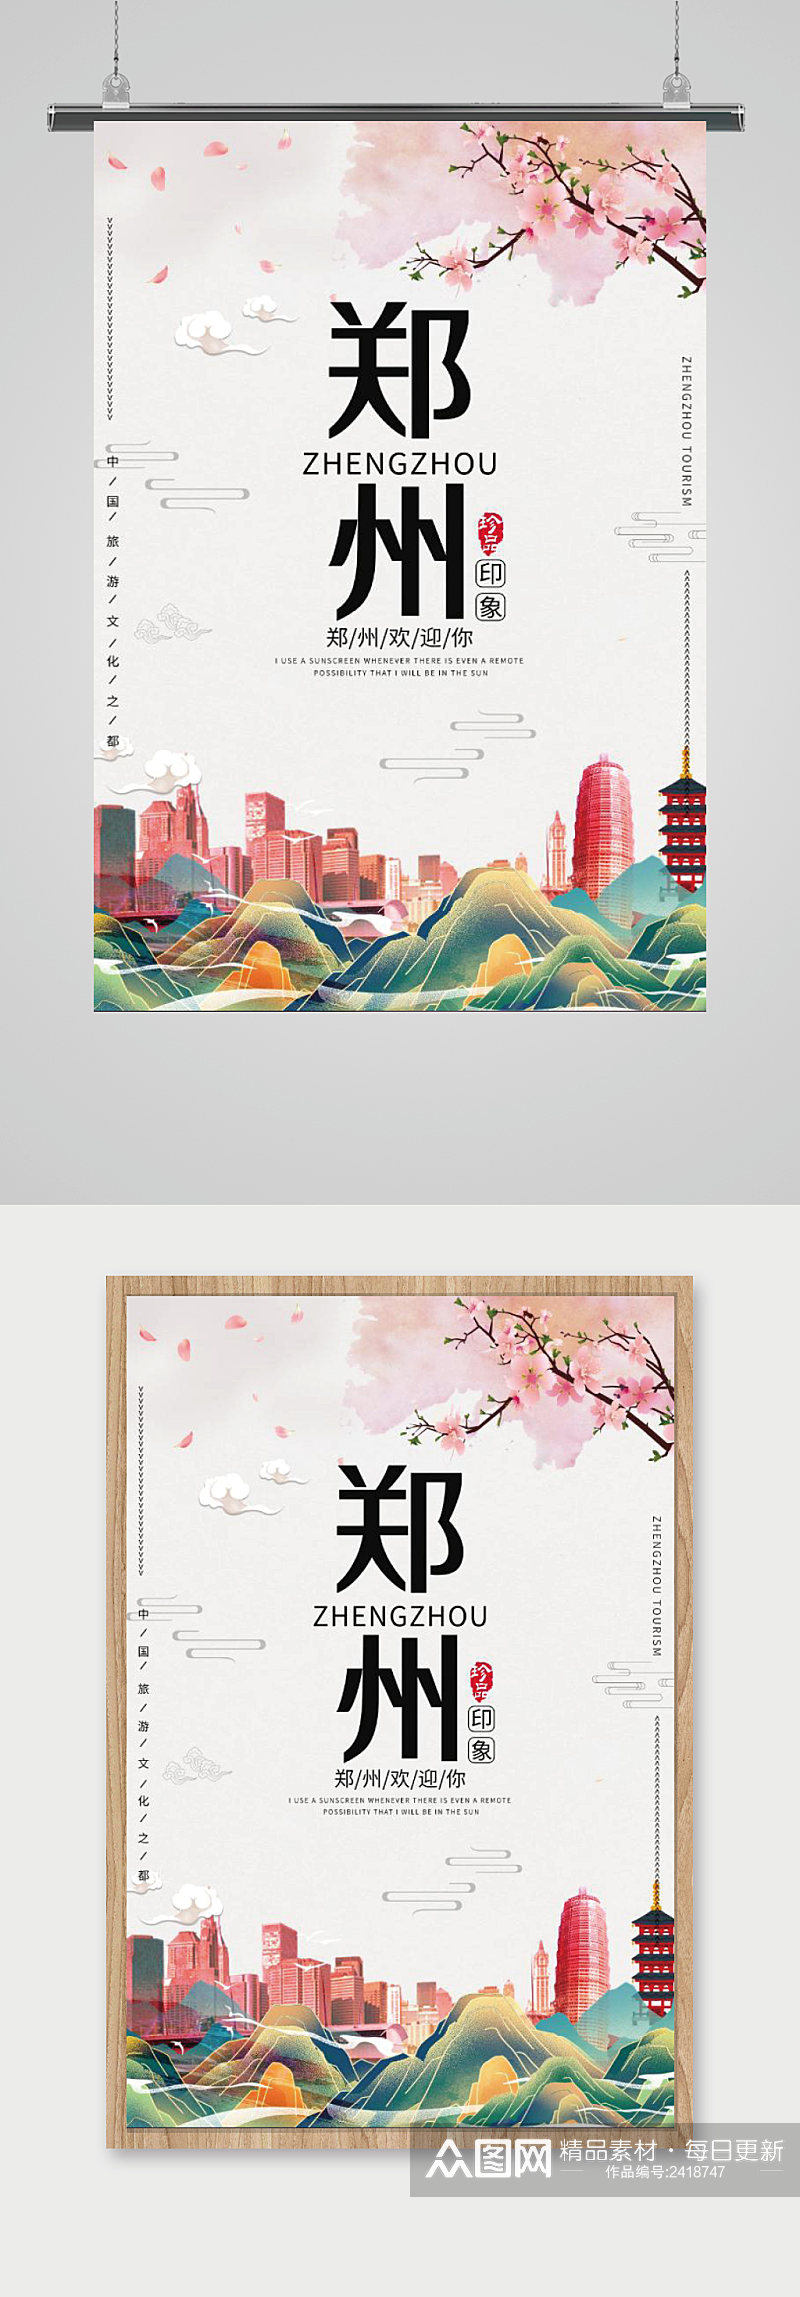 灰色国潮风郑州印象旅游文化宣传海报素材